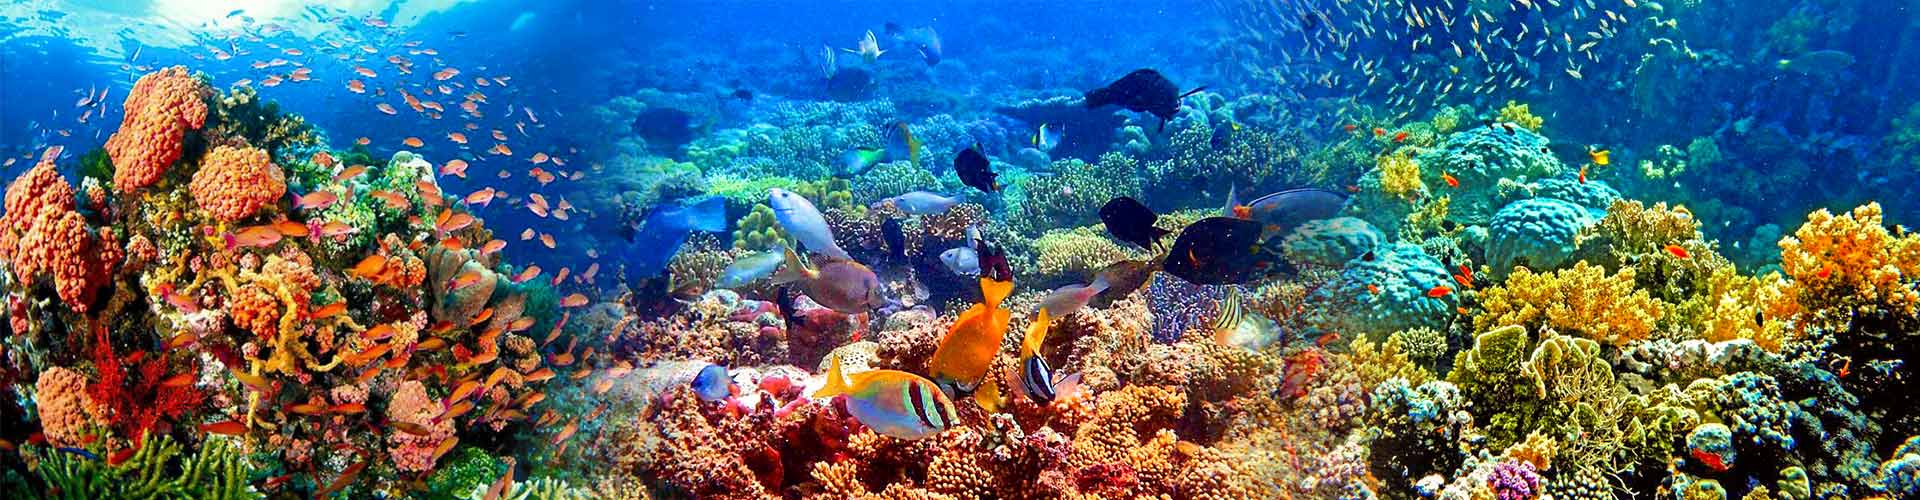 Popular Diving & Snorkeling Spots in Philippines - Top Beach Activities 